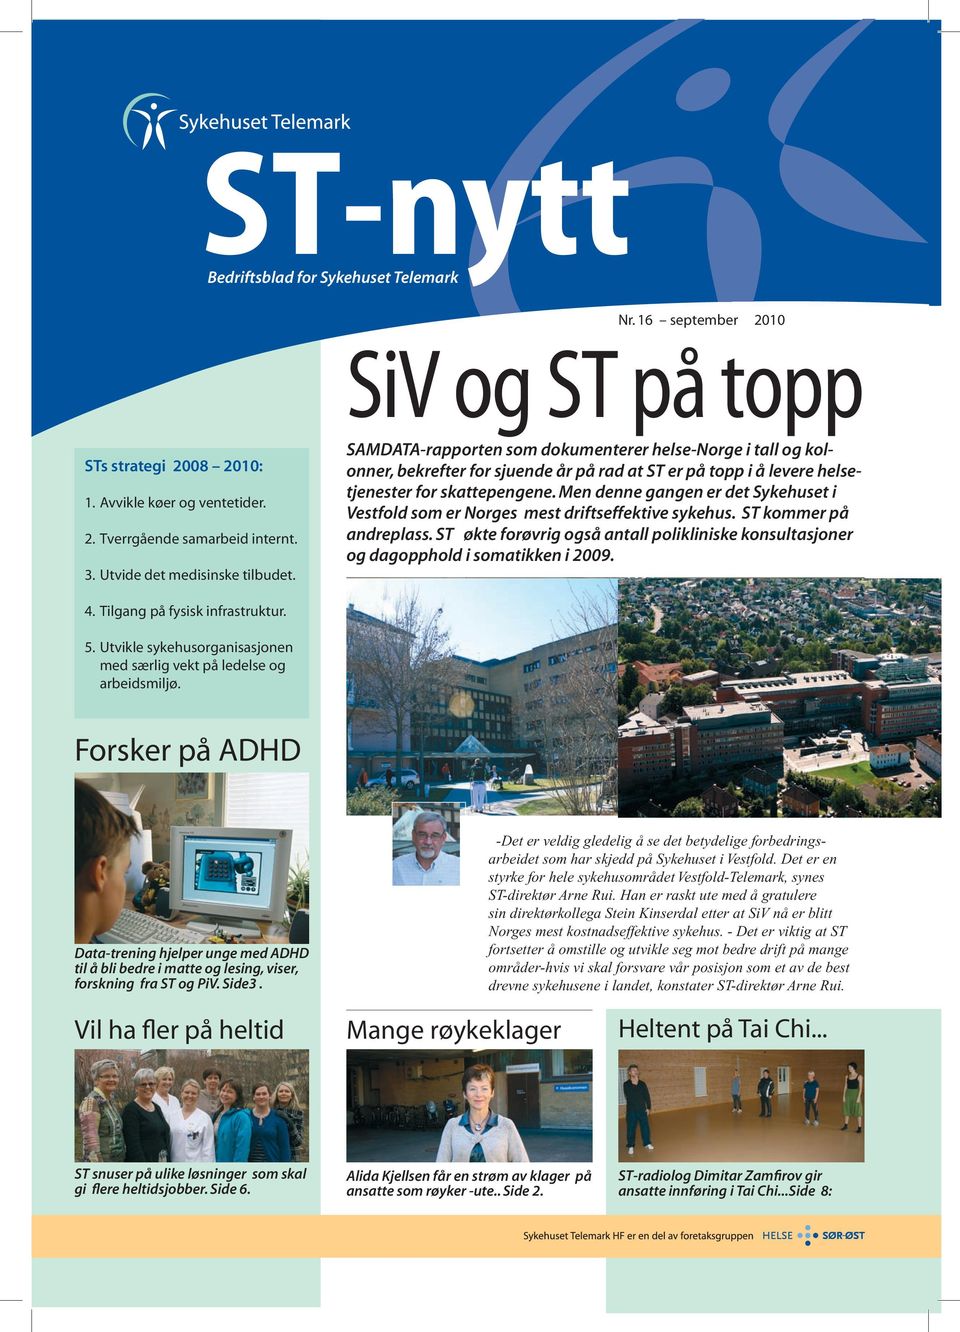 Men denne gangen er det Sykehuset i Vestfold som er Norges mest driftseffektive sykehus. ST kommer på andreplass.